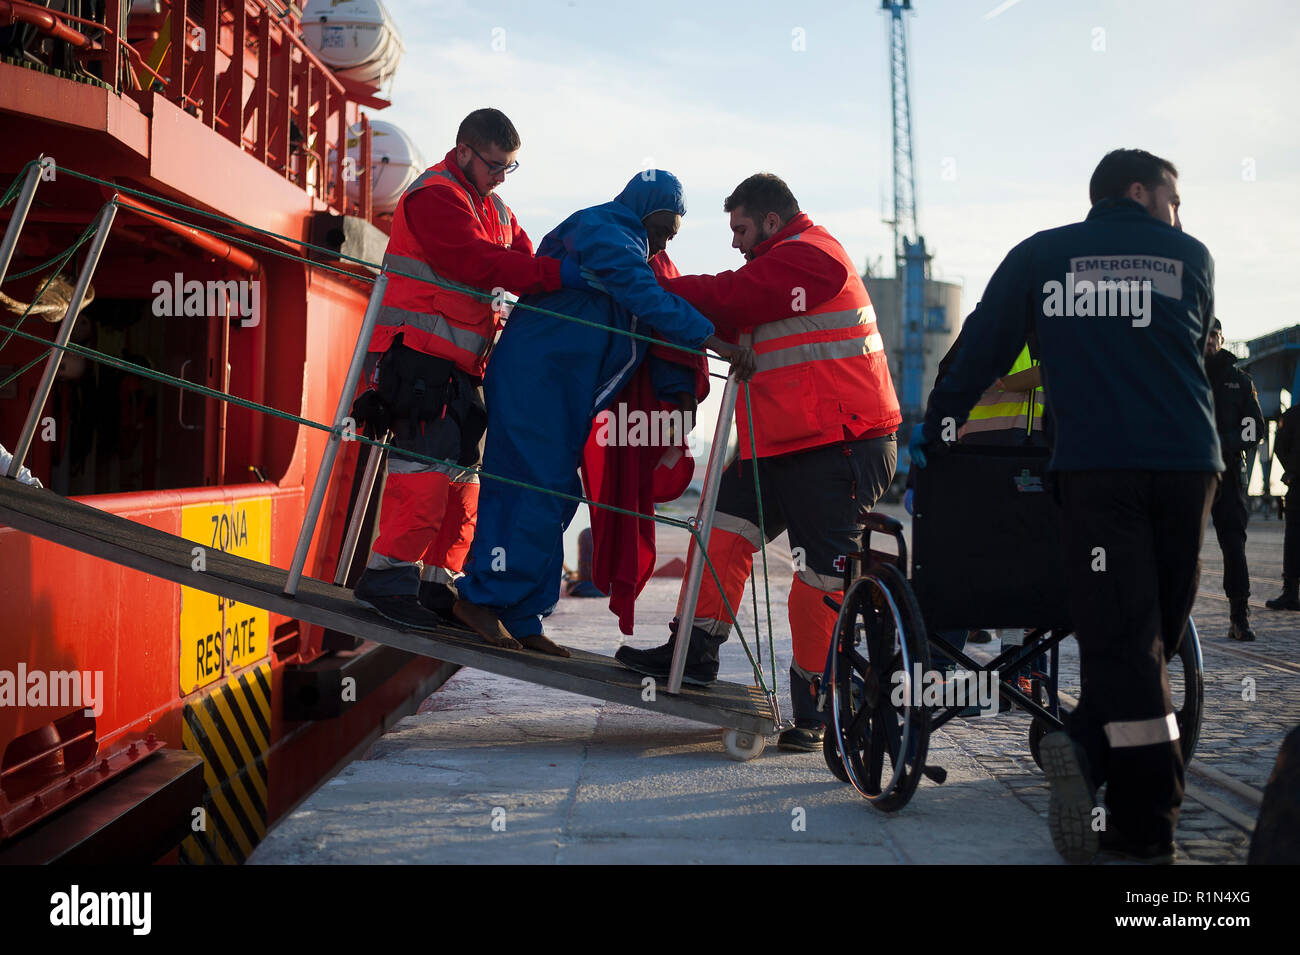 Migrantinnen und Migranten sind gesehen Aussteigen aus einem rettungsfahrzeug nach Ihrer Ankunft im Hafen von Malaga. Spaniens Maritime Rescue Service gerettet 176 Migranten an Bord jollen am Mittelmeer und brachte sie nach Malaga Hafen, von wo aus sie durch das Spanische Rote Kreuz unterstützt wurden. Stockfoto